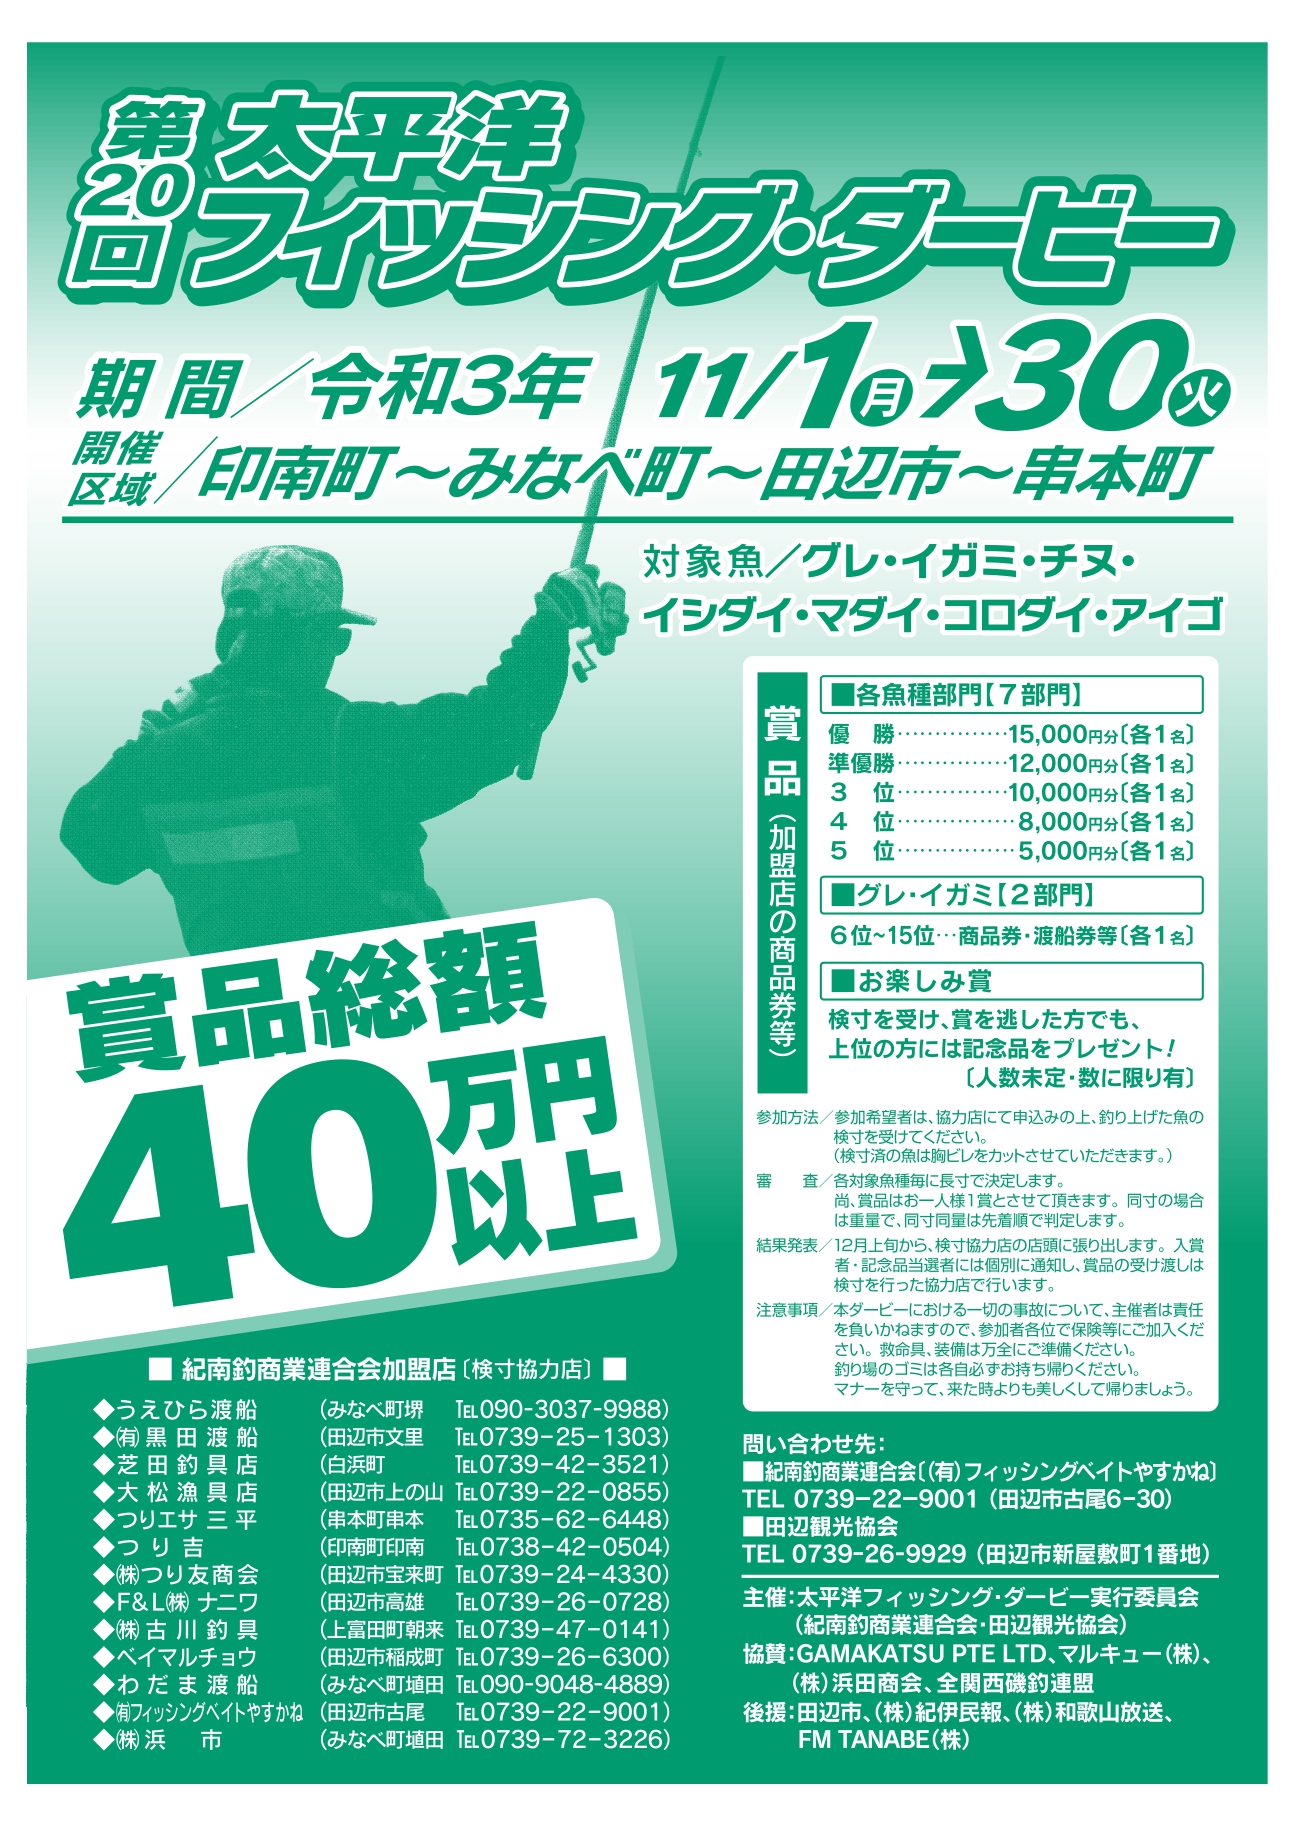 第20回 太平洋フィッシング・ダービー u2013 和歌山県 田辺観光協会